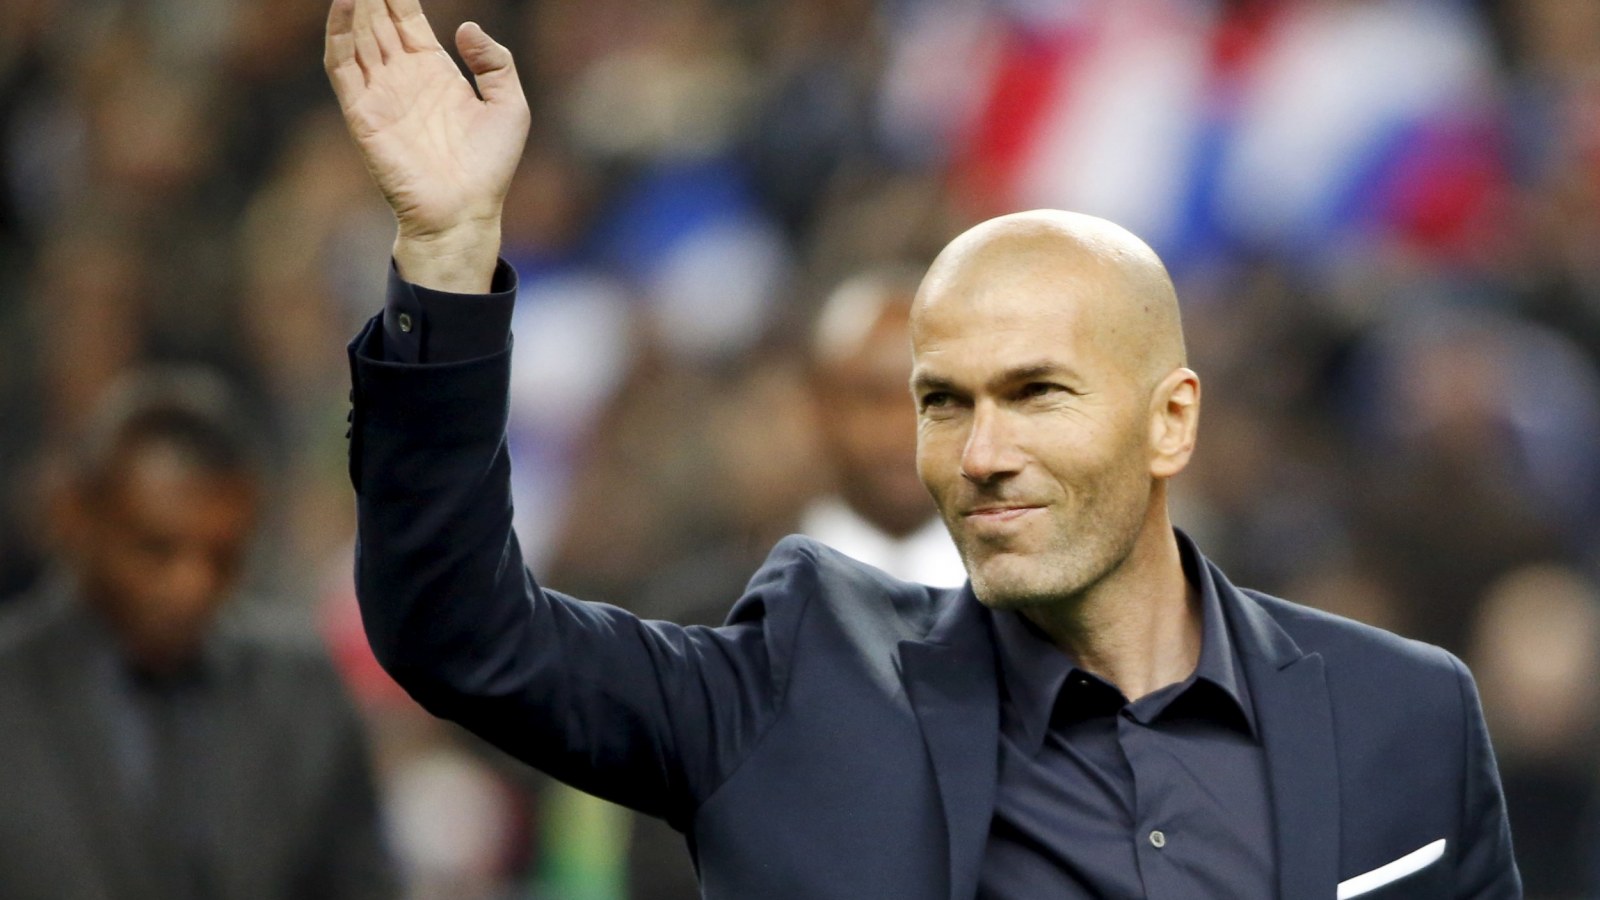 NÓNG: Zidane chốt xong bến đỗ mới, chiêu mộ luôn ‘cầu thủ đắt thứ 4 lịch sử’?